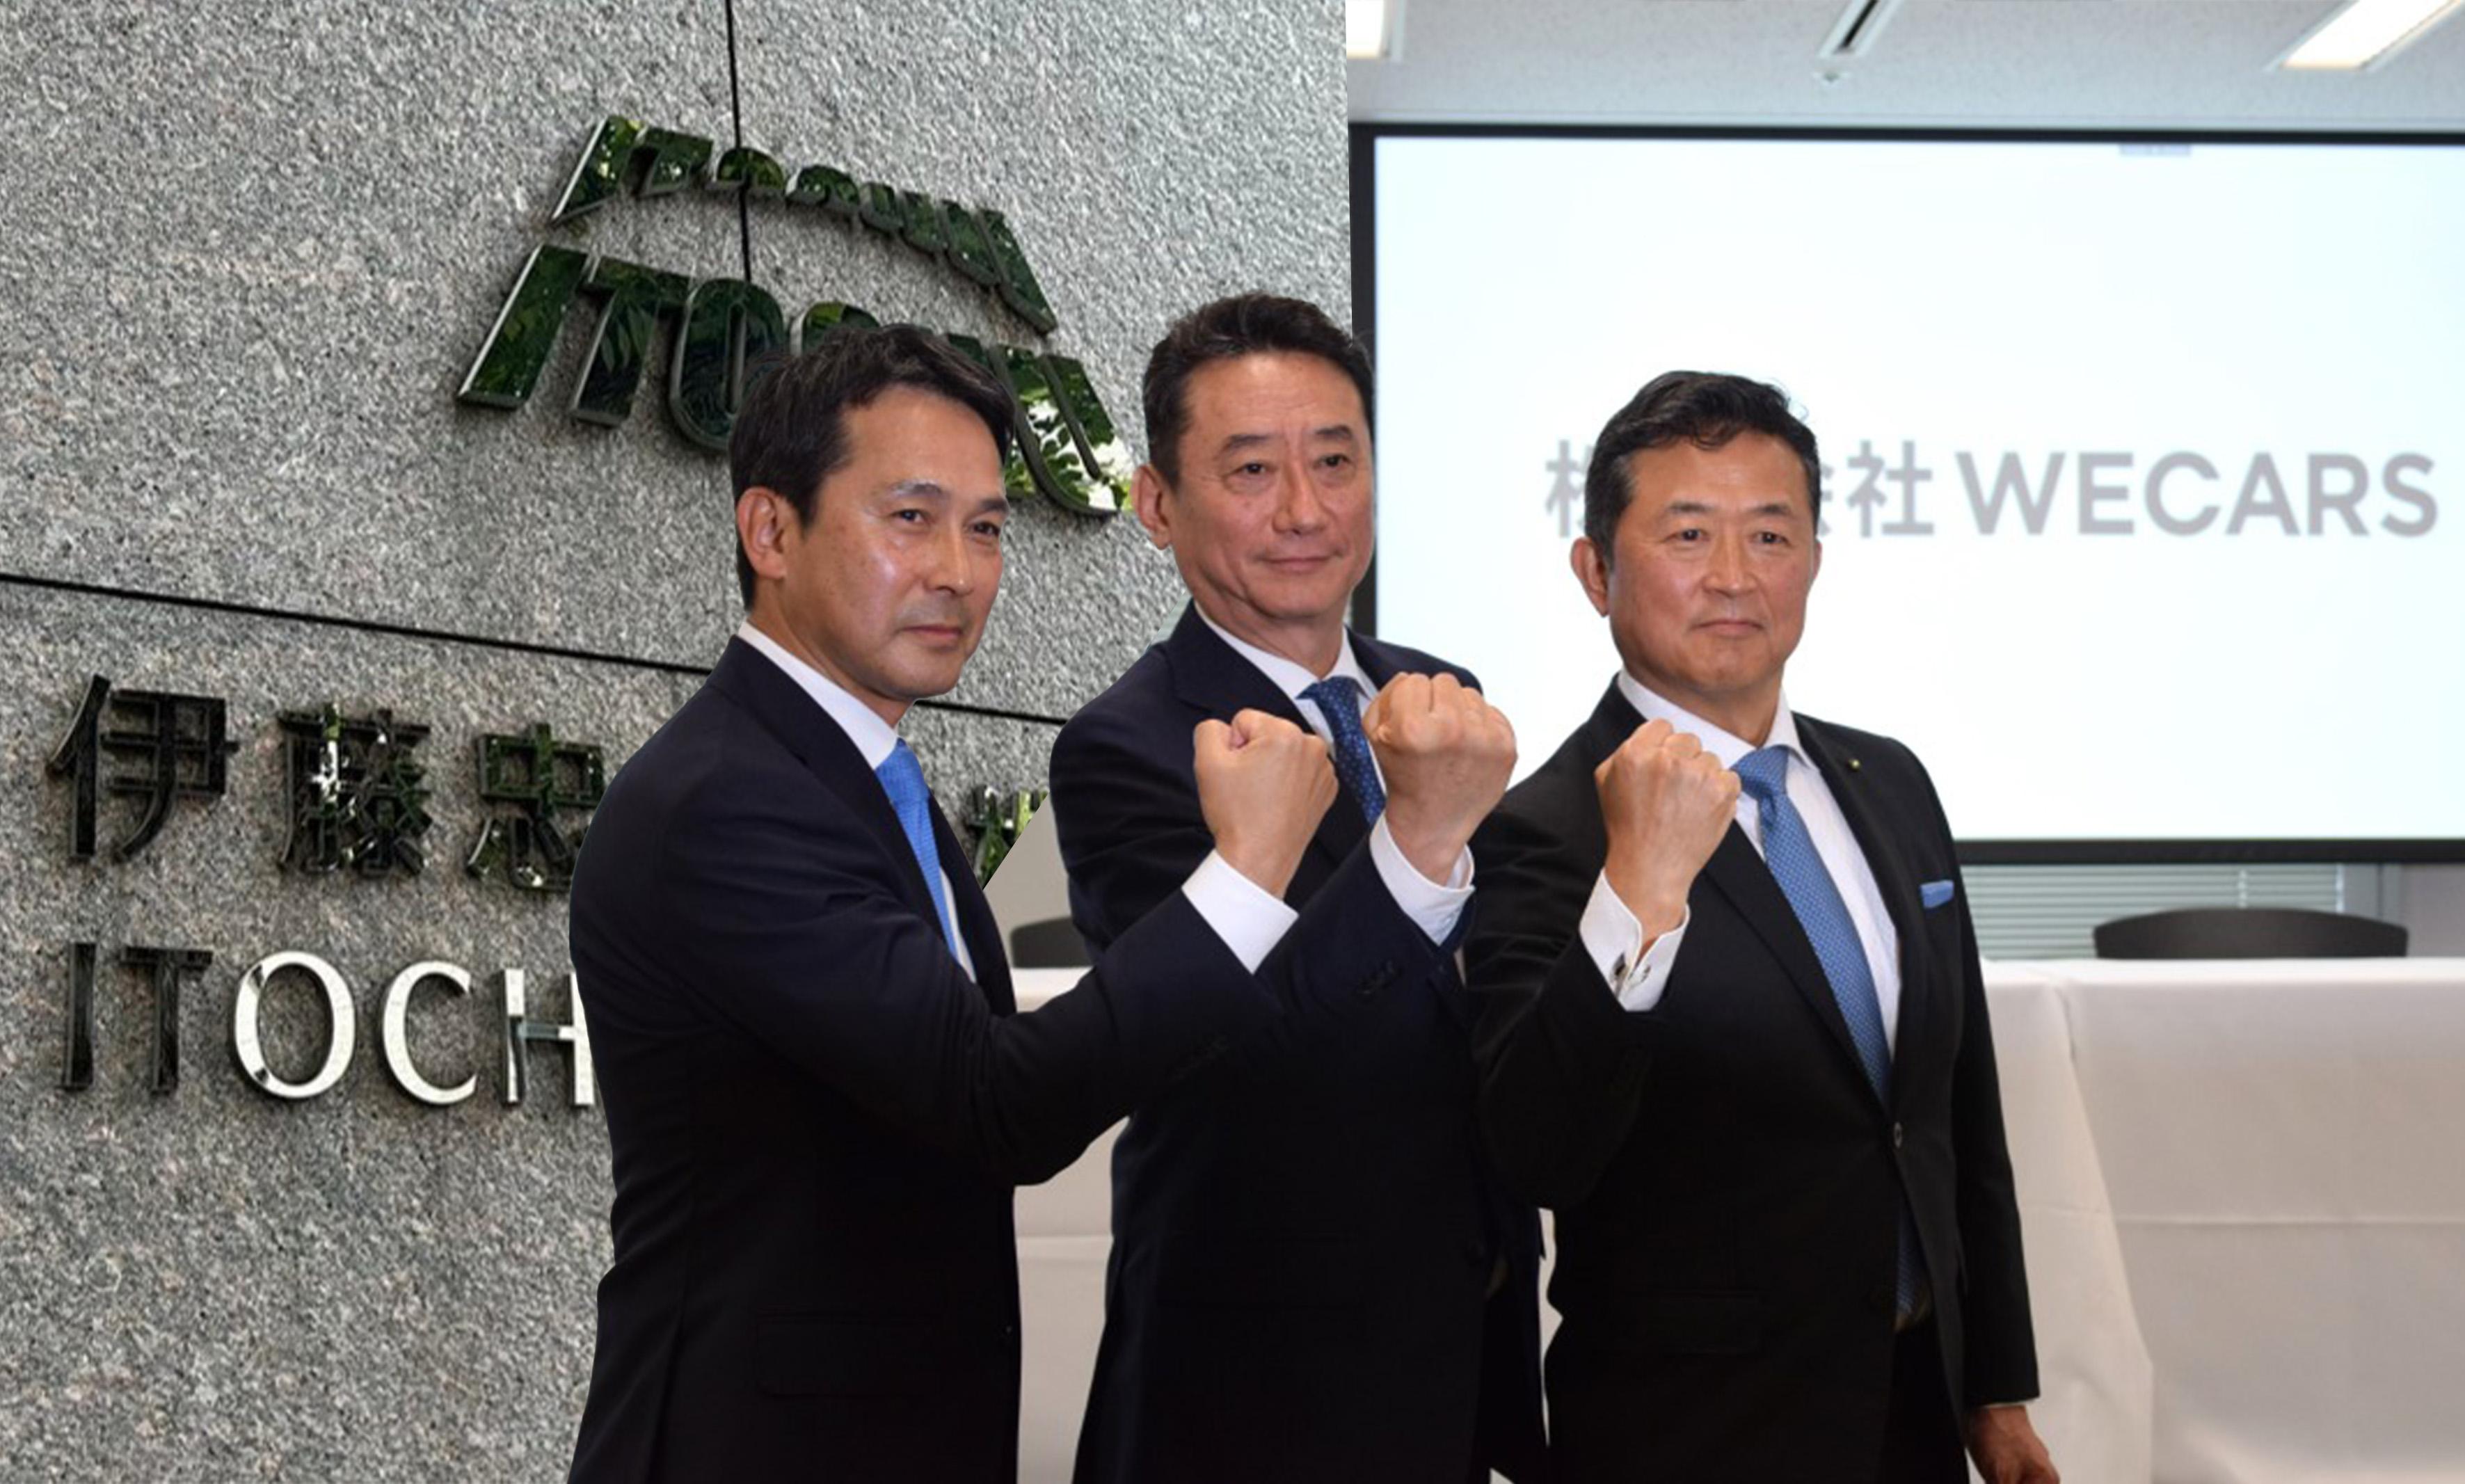 ビッグモーター再建の新会社「WECARS」が始動。伊藤忠出身の新社長、コンプラ徹底改善